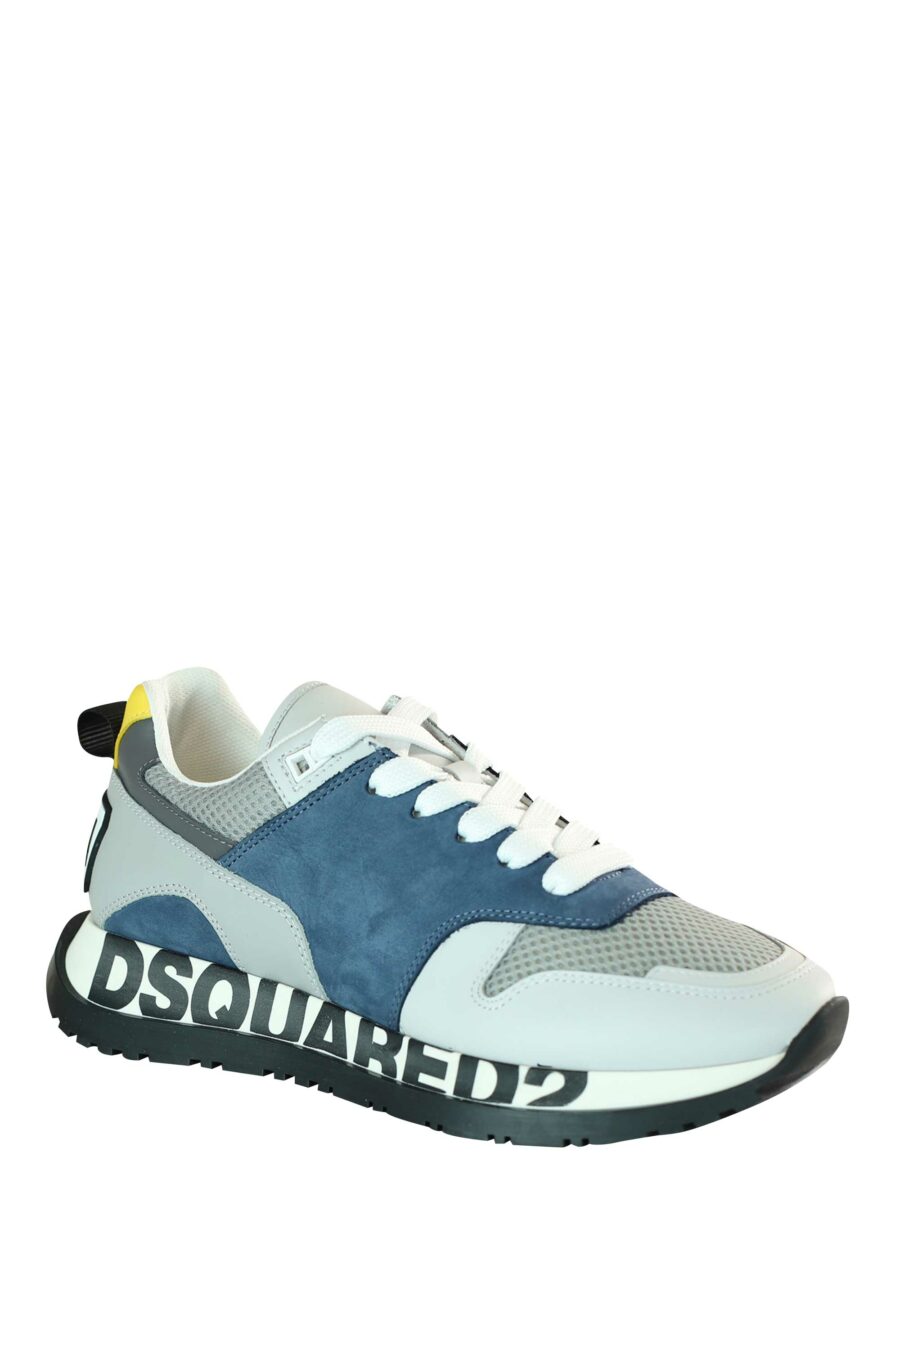 Chaussures de course multicolores bleues avec logo sur la semelle - 8055777205549 2